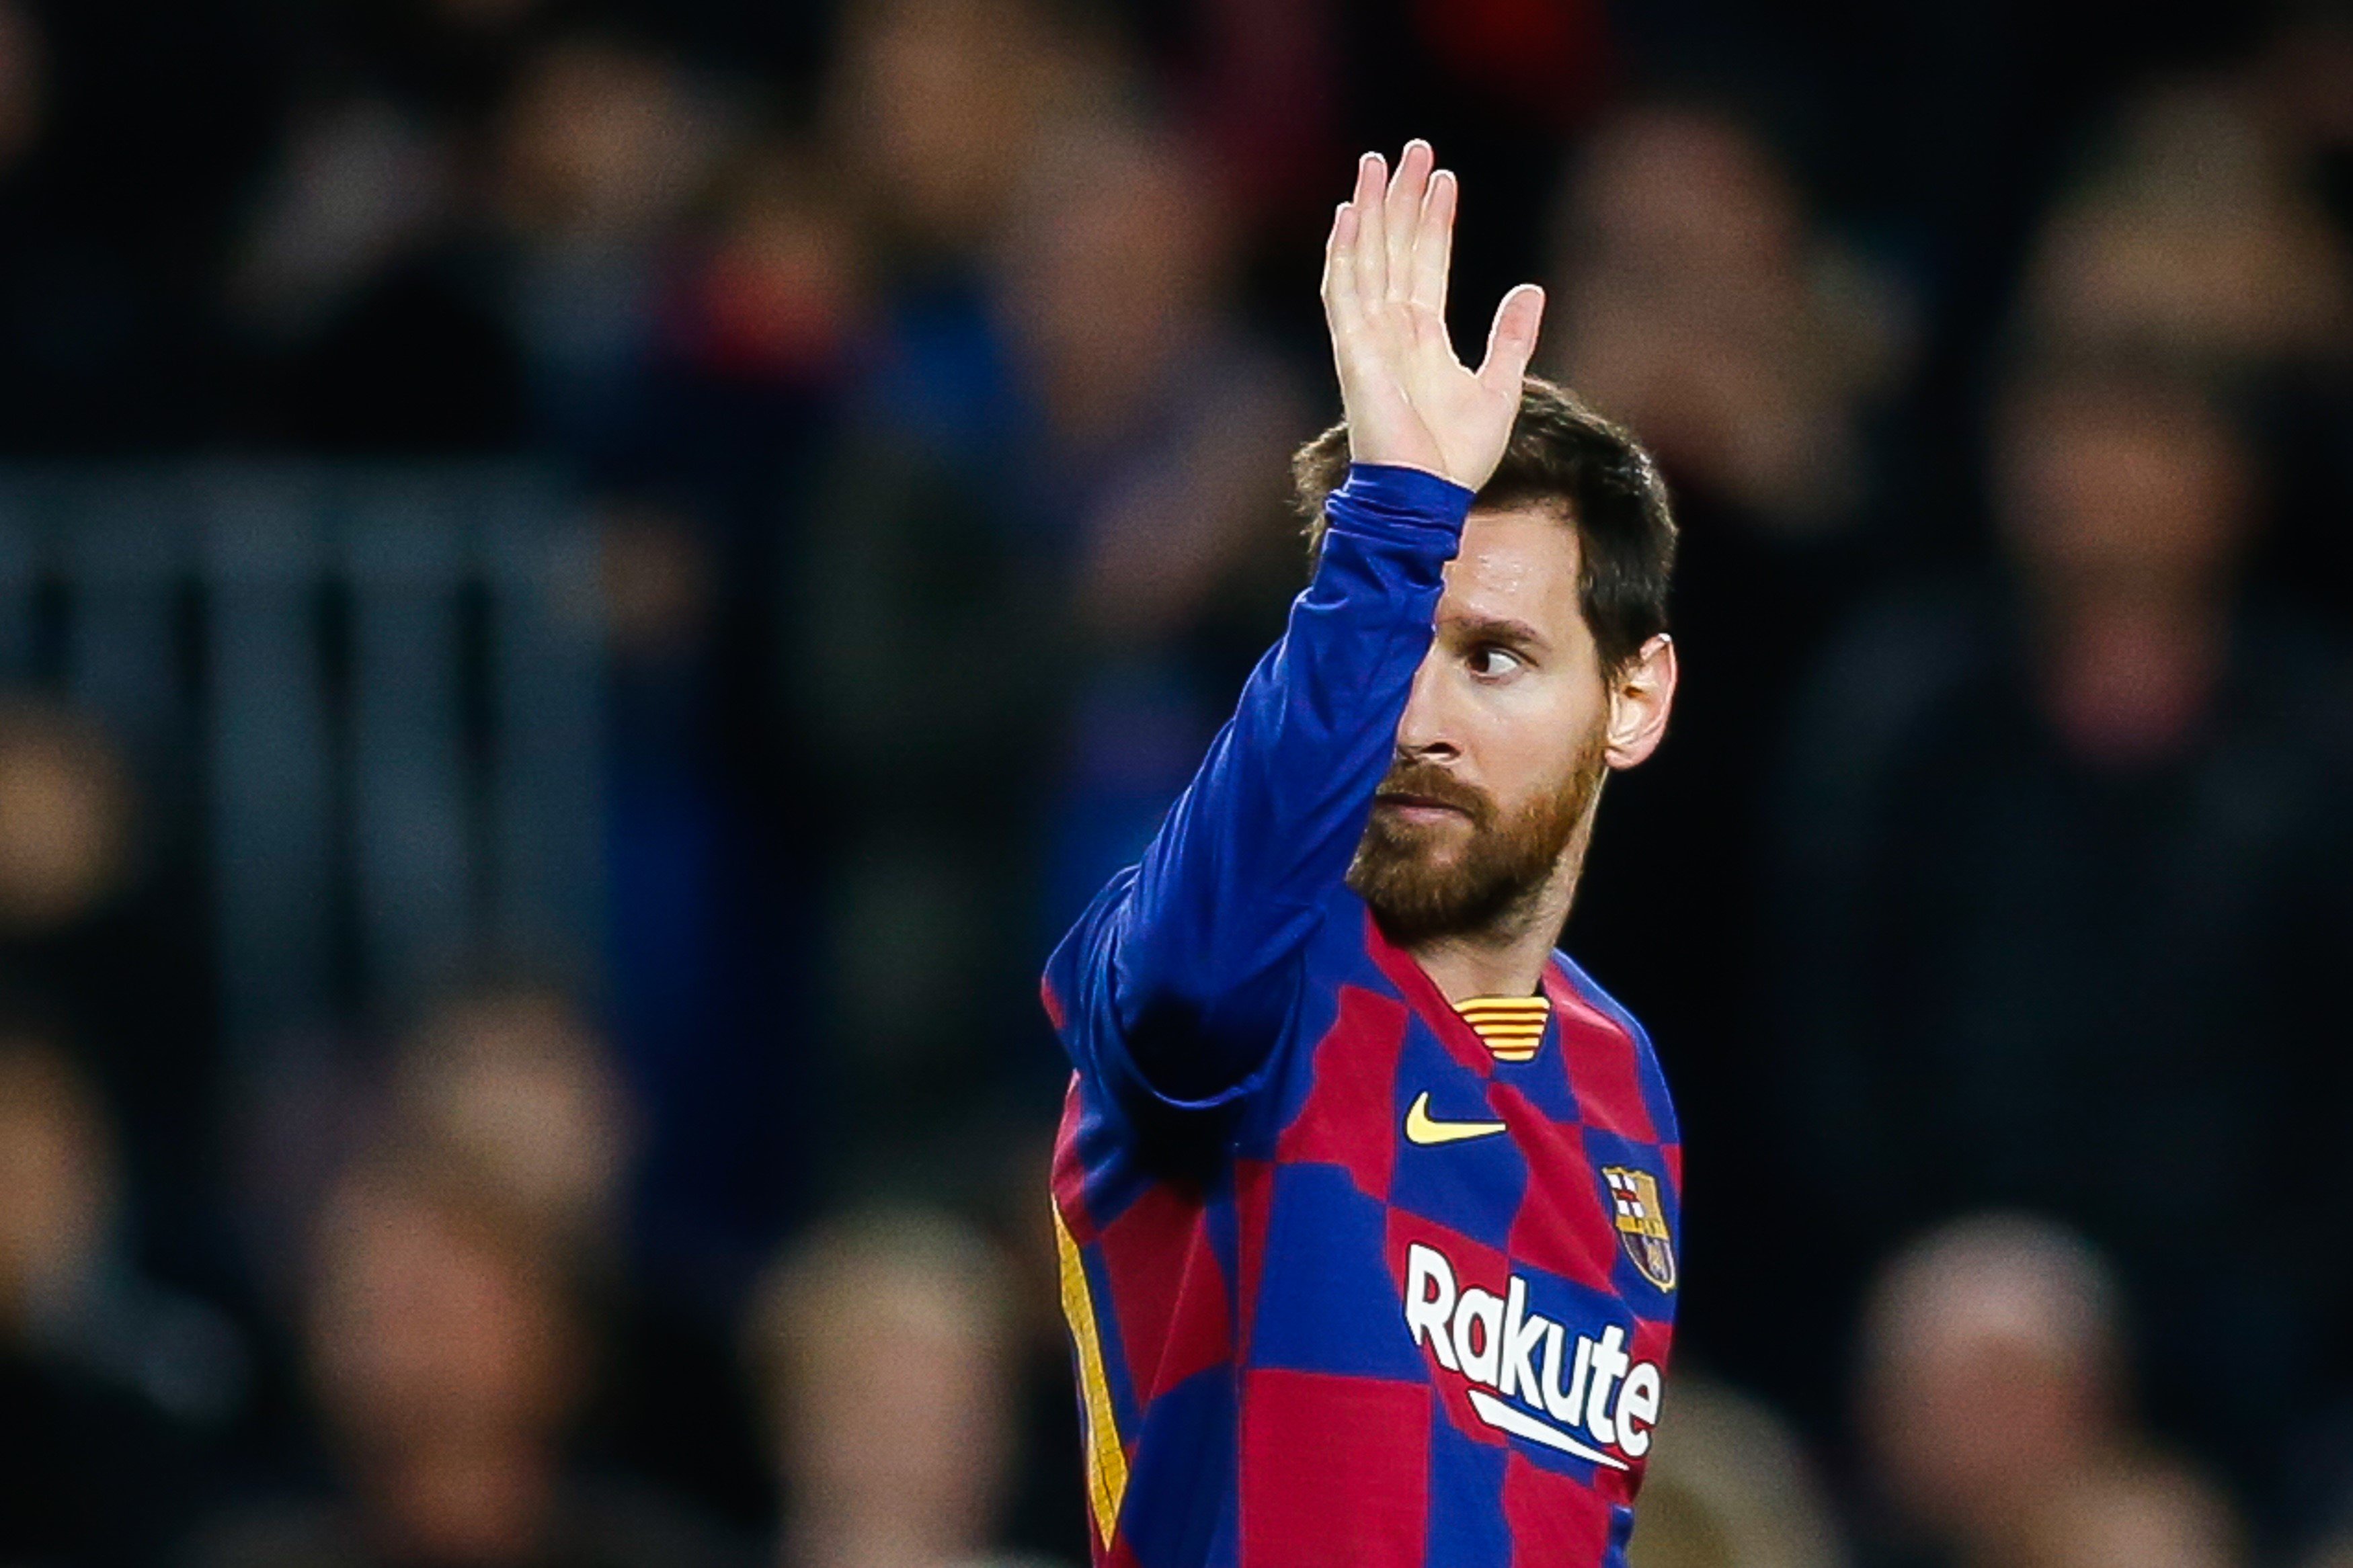 El futur de Messi: la data límit per marxar del Barça